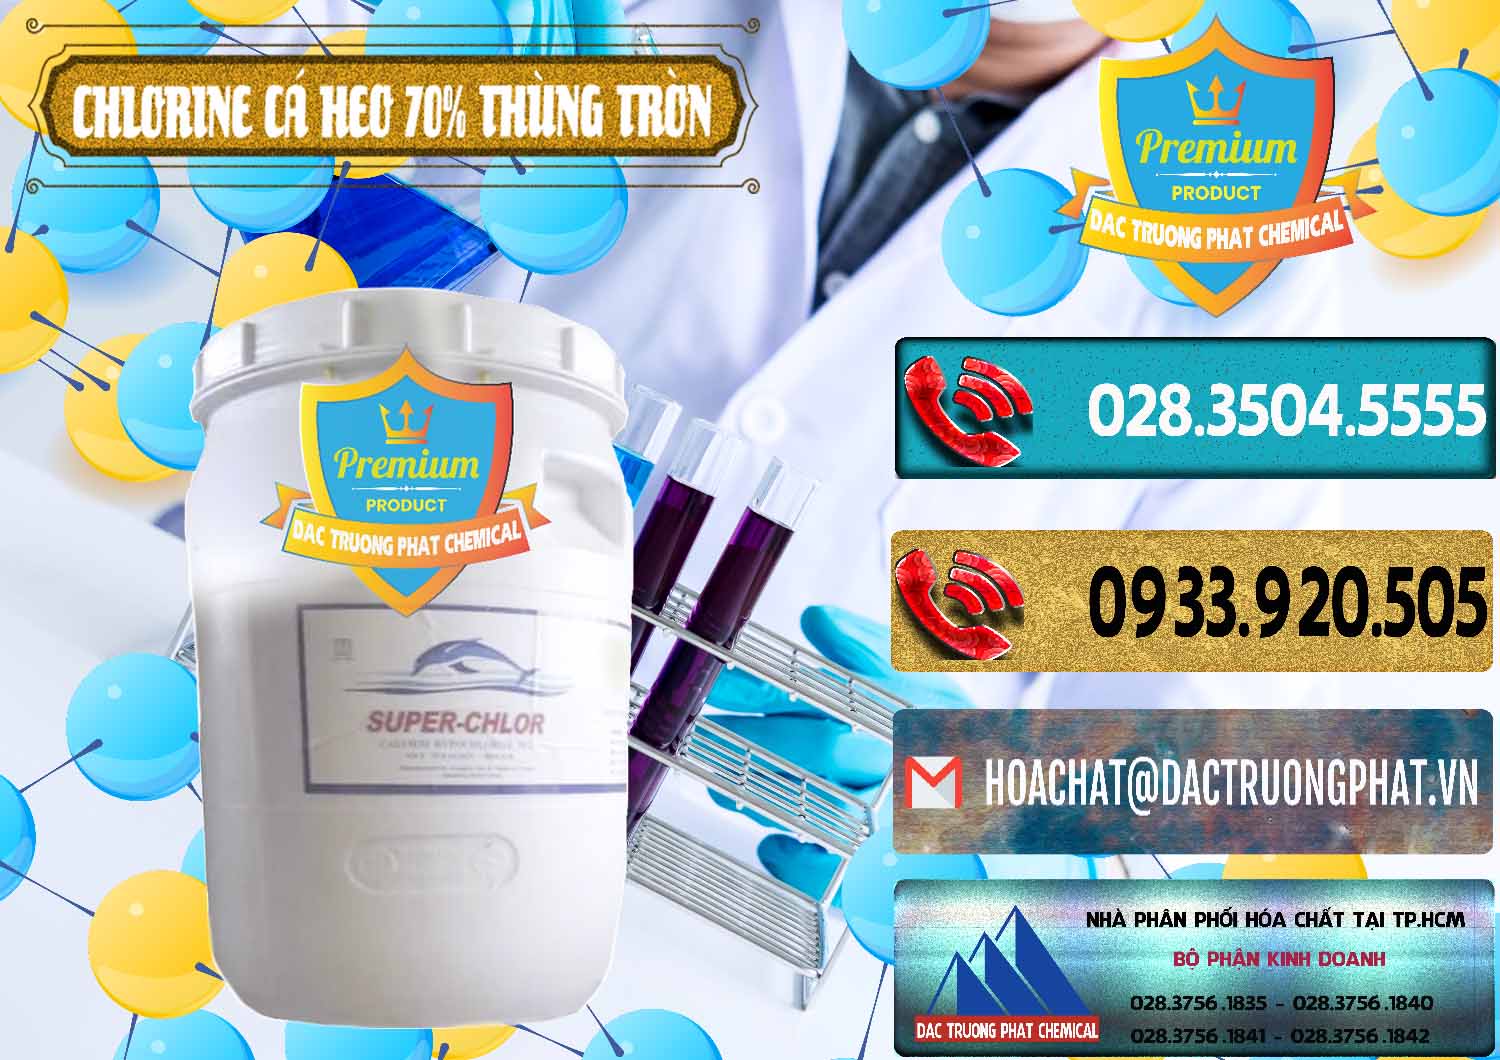 Đơn vị chuyên kinh doanh & bán Clorin - Chlorine Cá Heo 70% Super Chlor Thùng Tròn Nắp Trắng Trung Quốc China - 0239 - Công ty phân phối _ bán hóa chất tại TP.HCM - hoachatdetnhuom.com